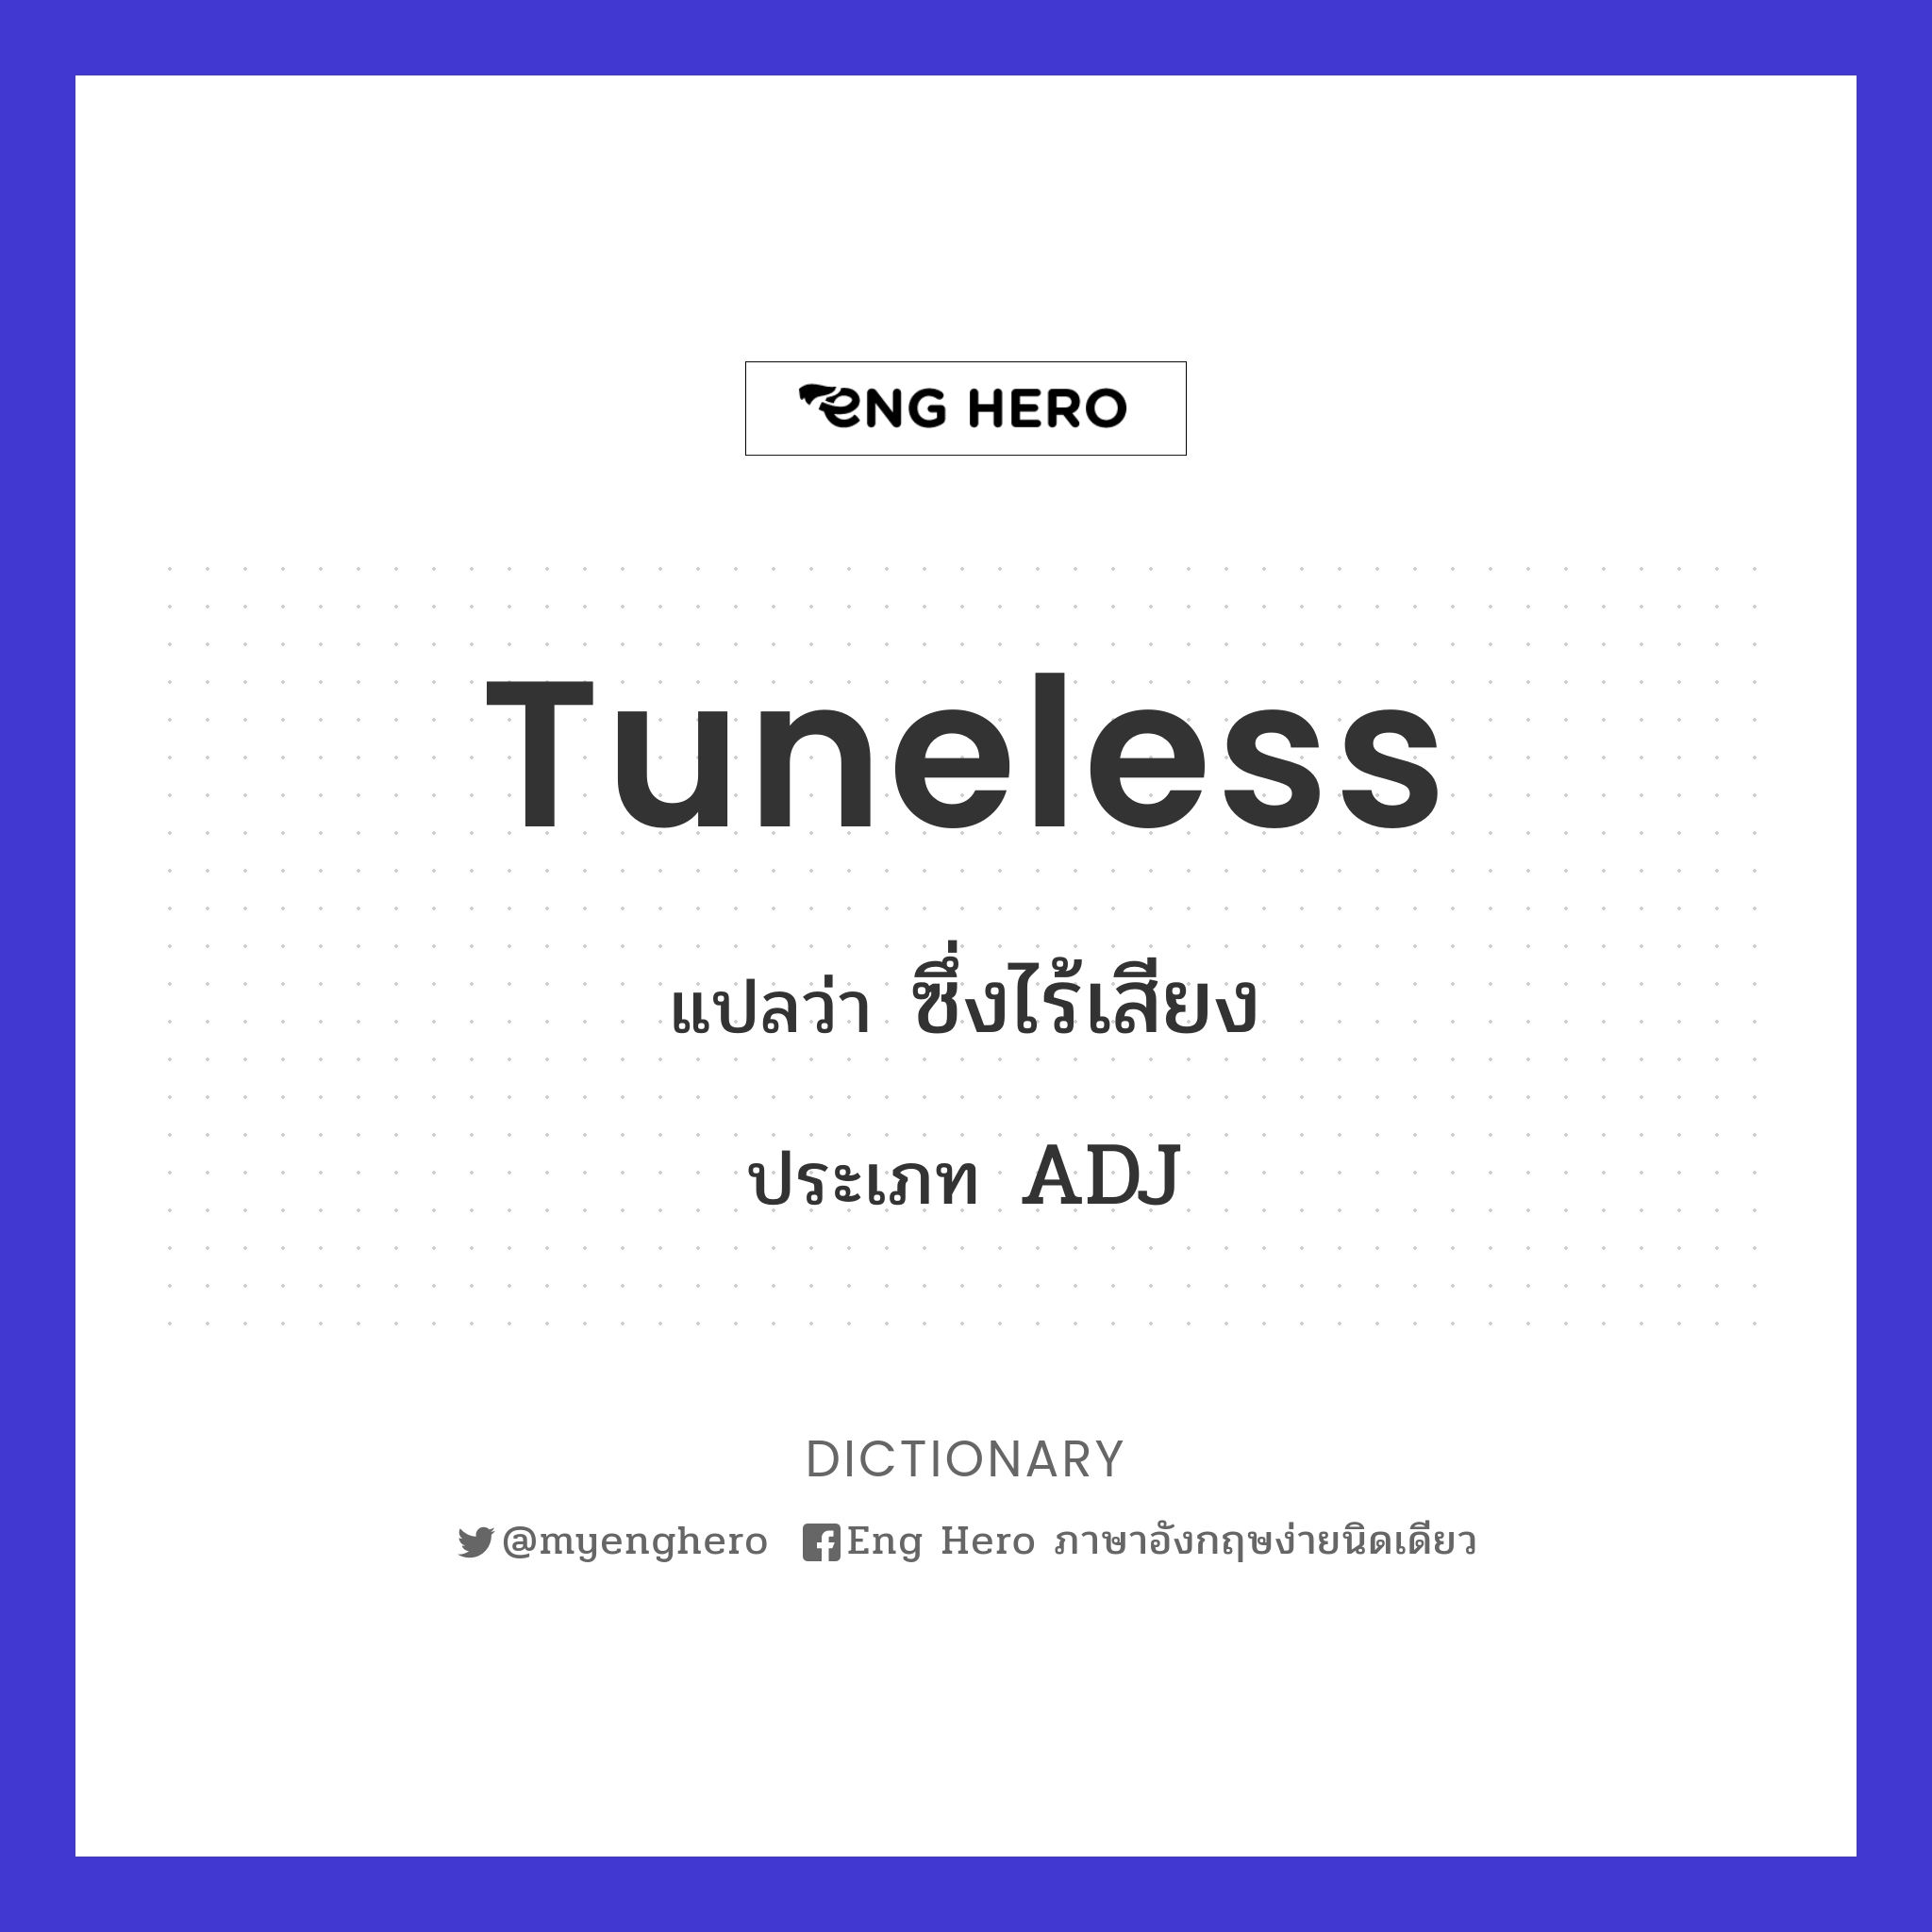 tuneless